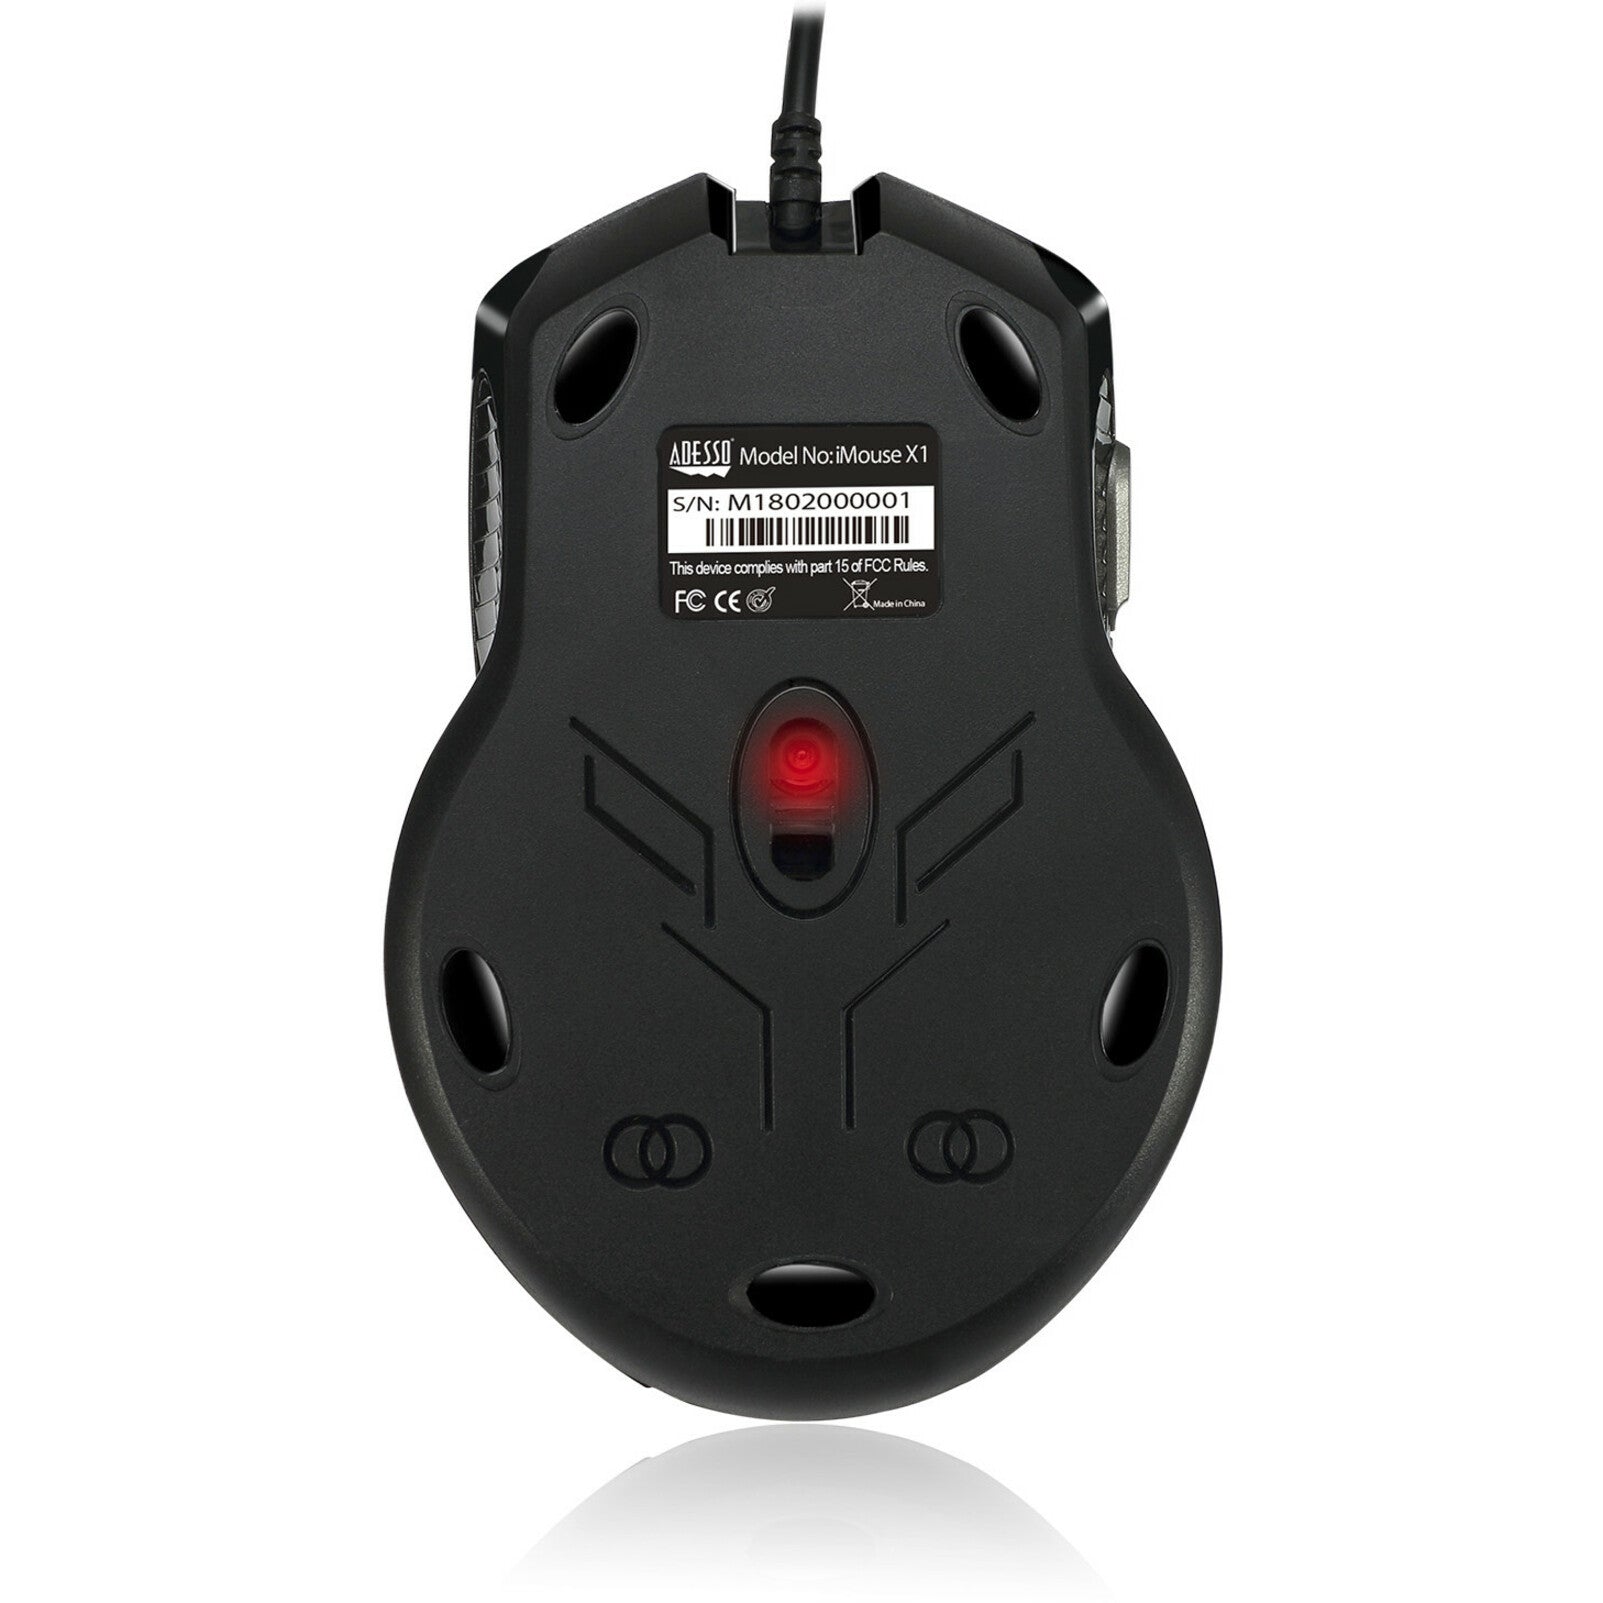 品牌: Adesso Adesso IMOUSE X1 多色 6 按键 游戏鼠标 人体工程学设计 3200 DPI USB 有线